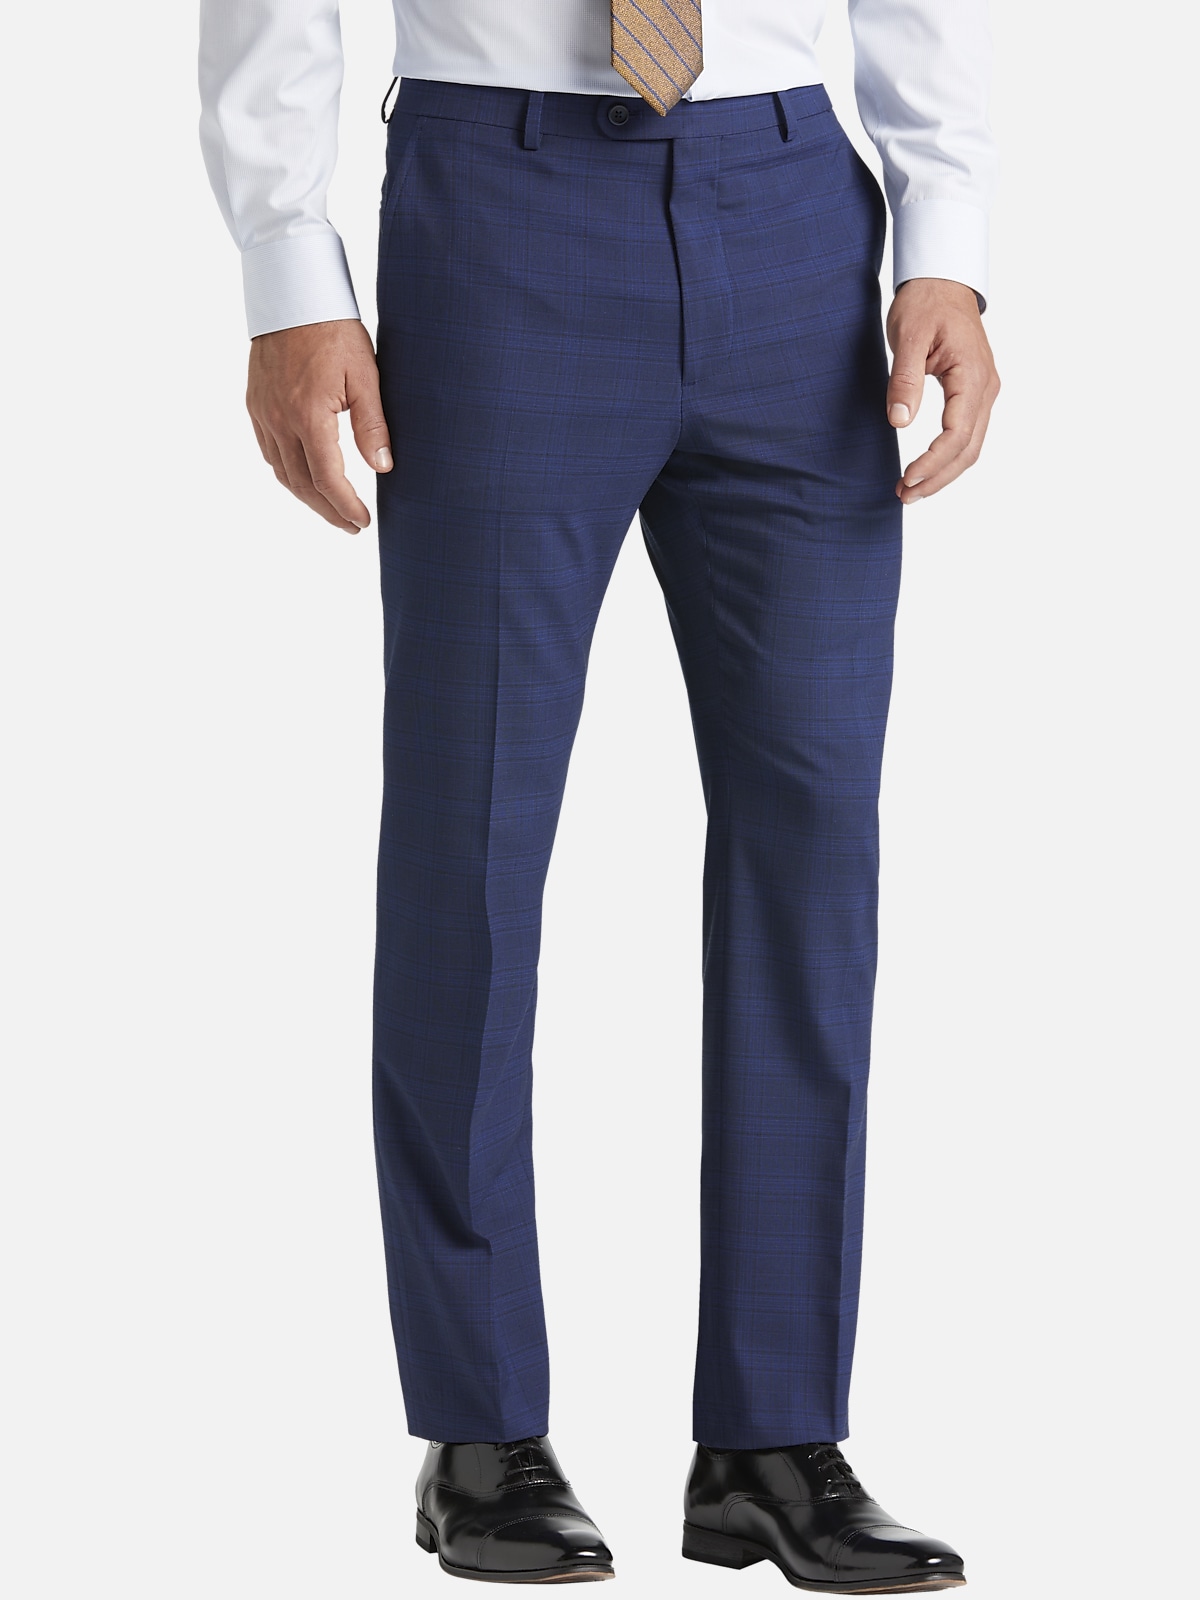 Pronto Uomo Modern Fit Plaid Suit Separates Pants | All Sale| Men's ...